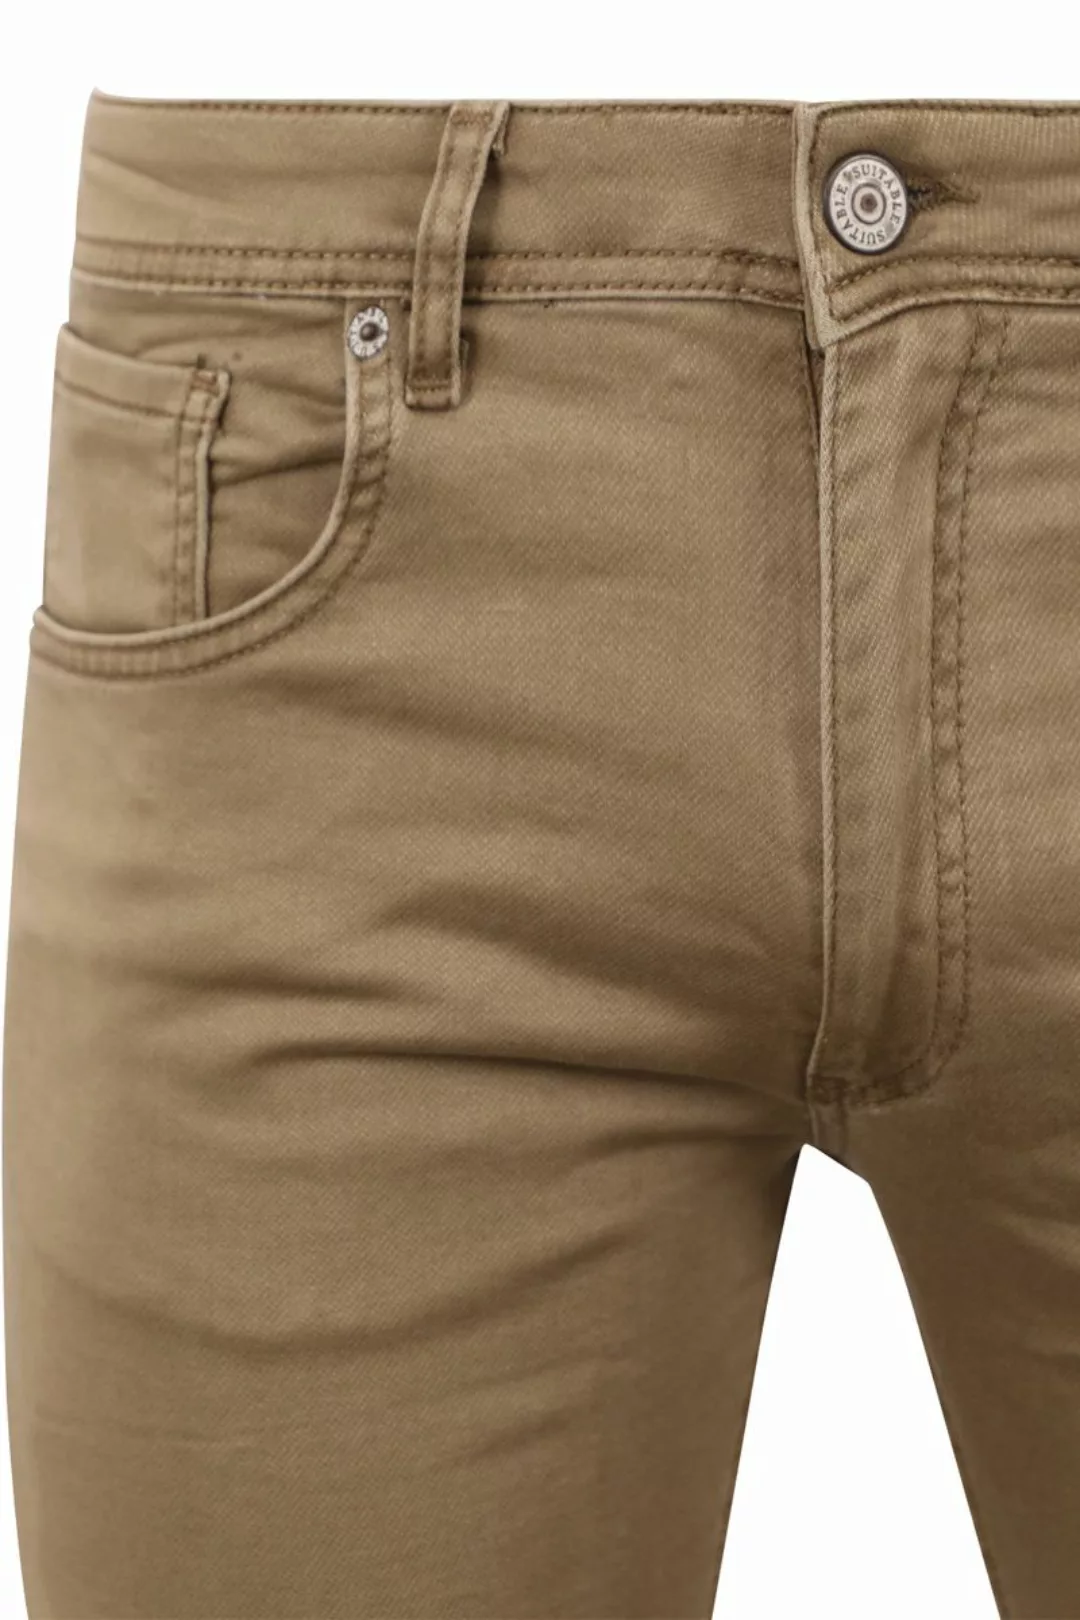 Suitable Kant Jeans Khaki - Größe W 38 - L 32 günstig online kaufen